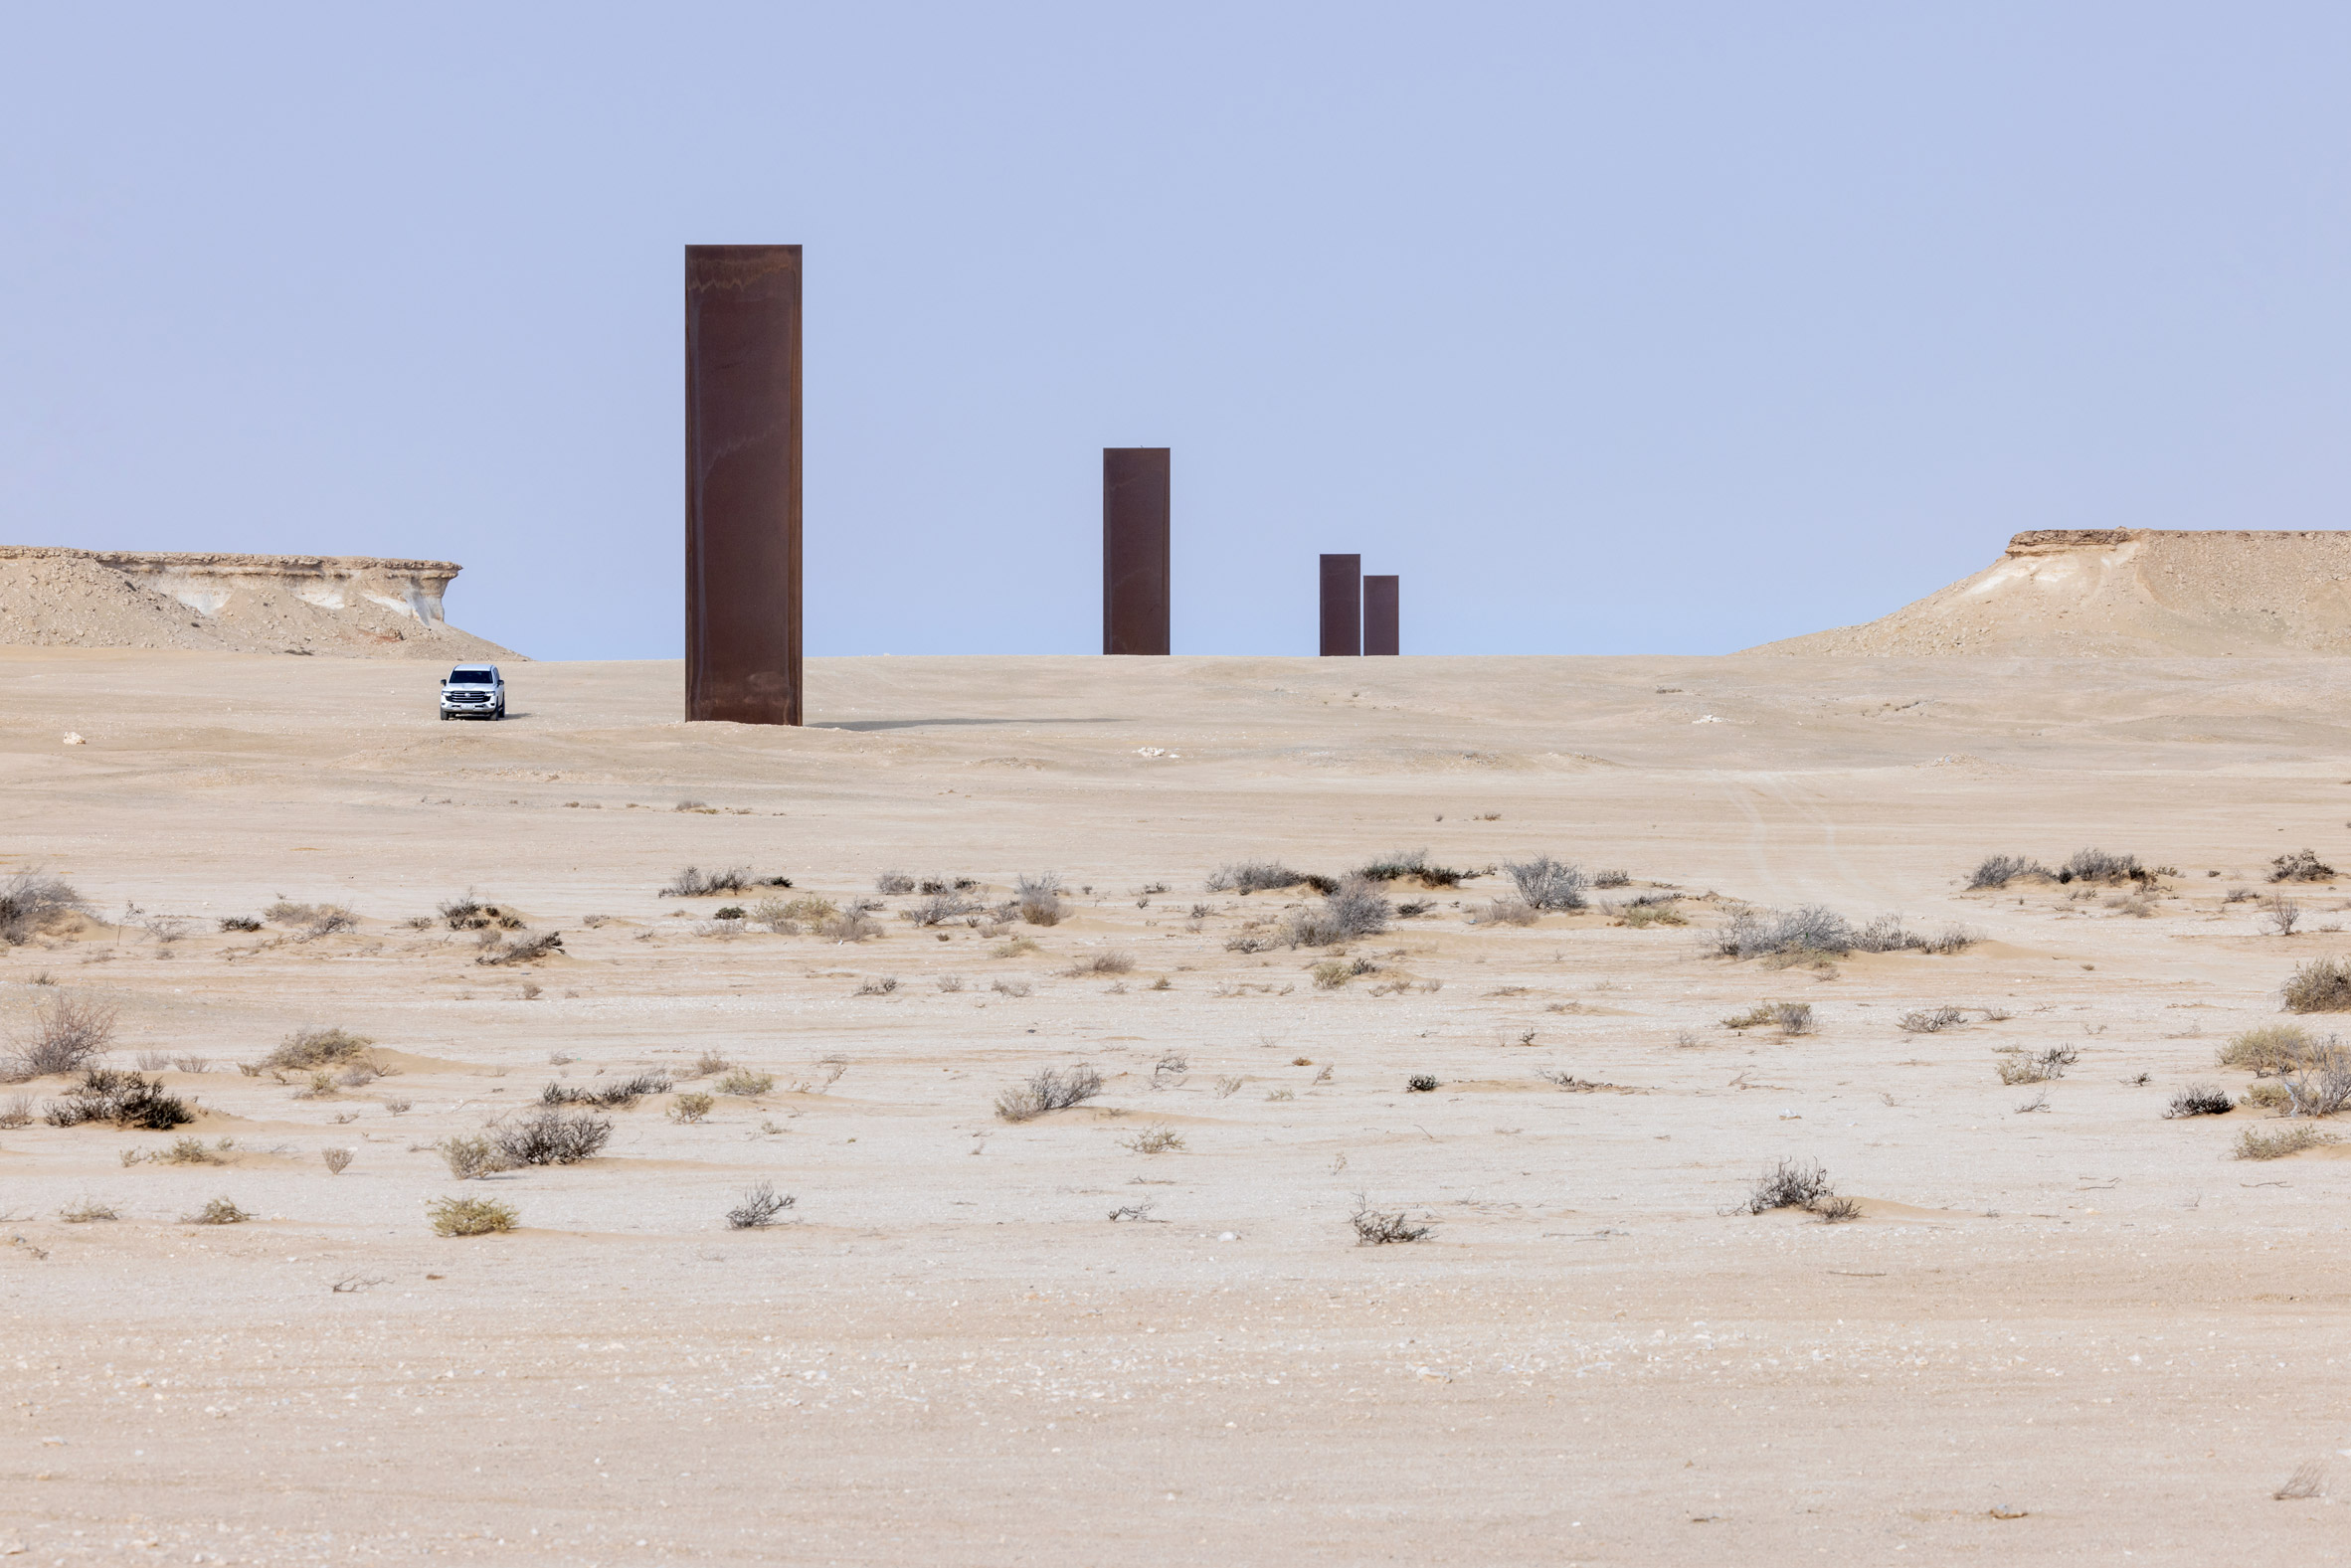 Large weathering-steel sculptures in Qatar desert